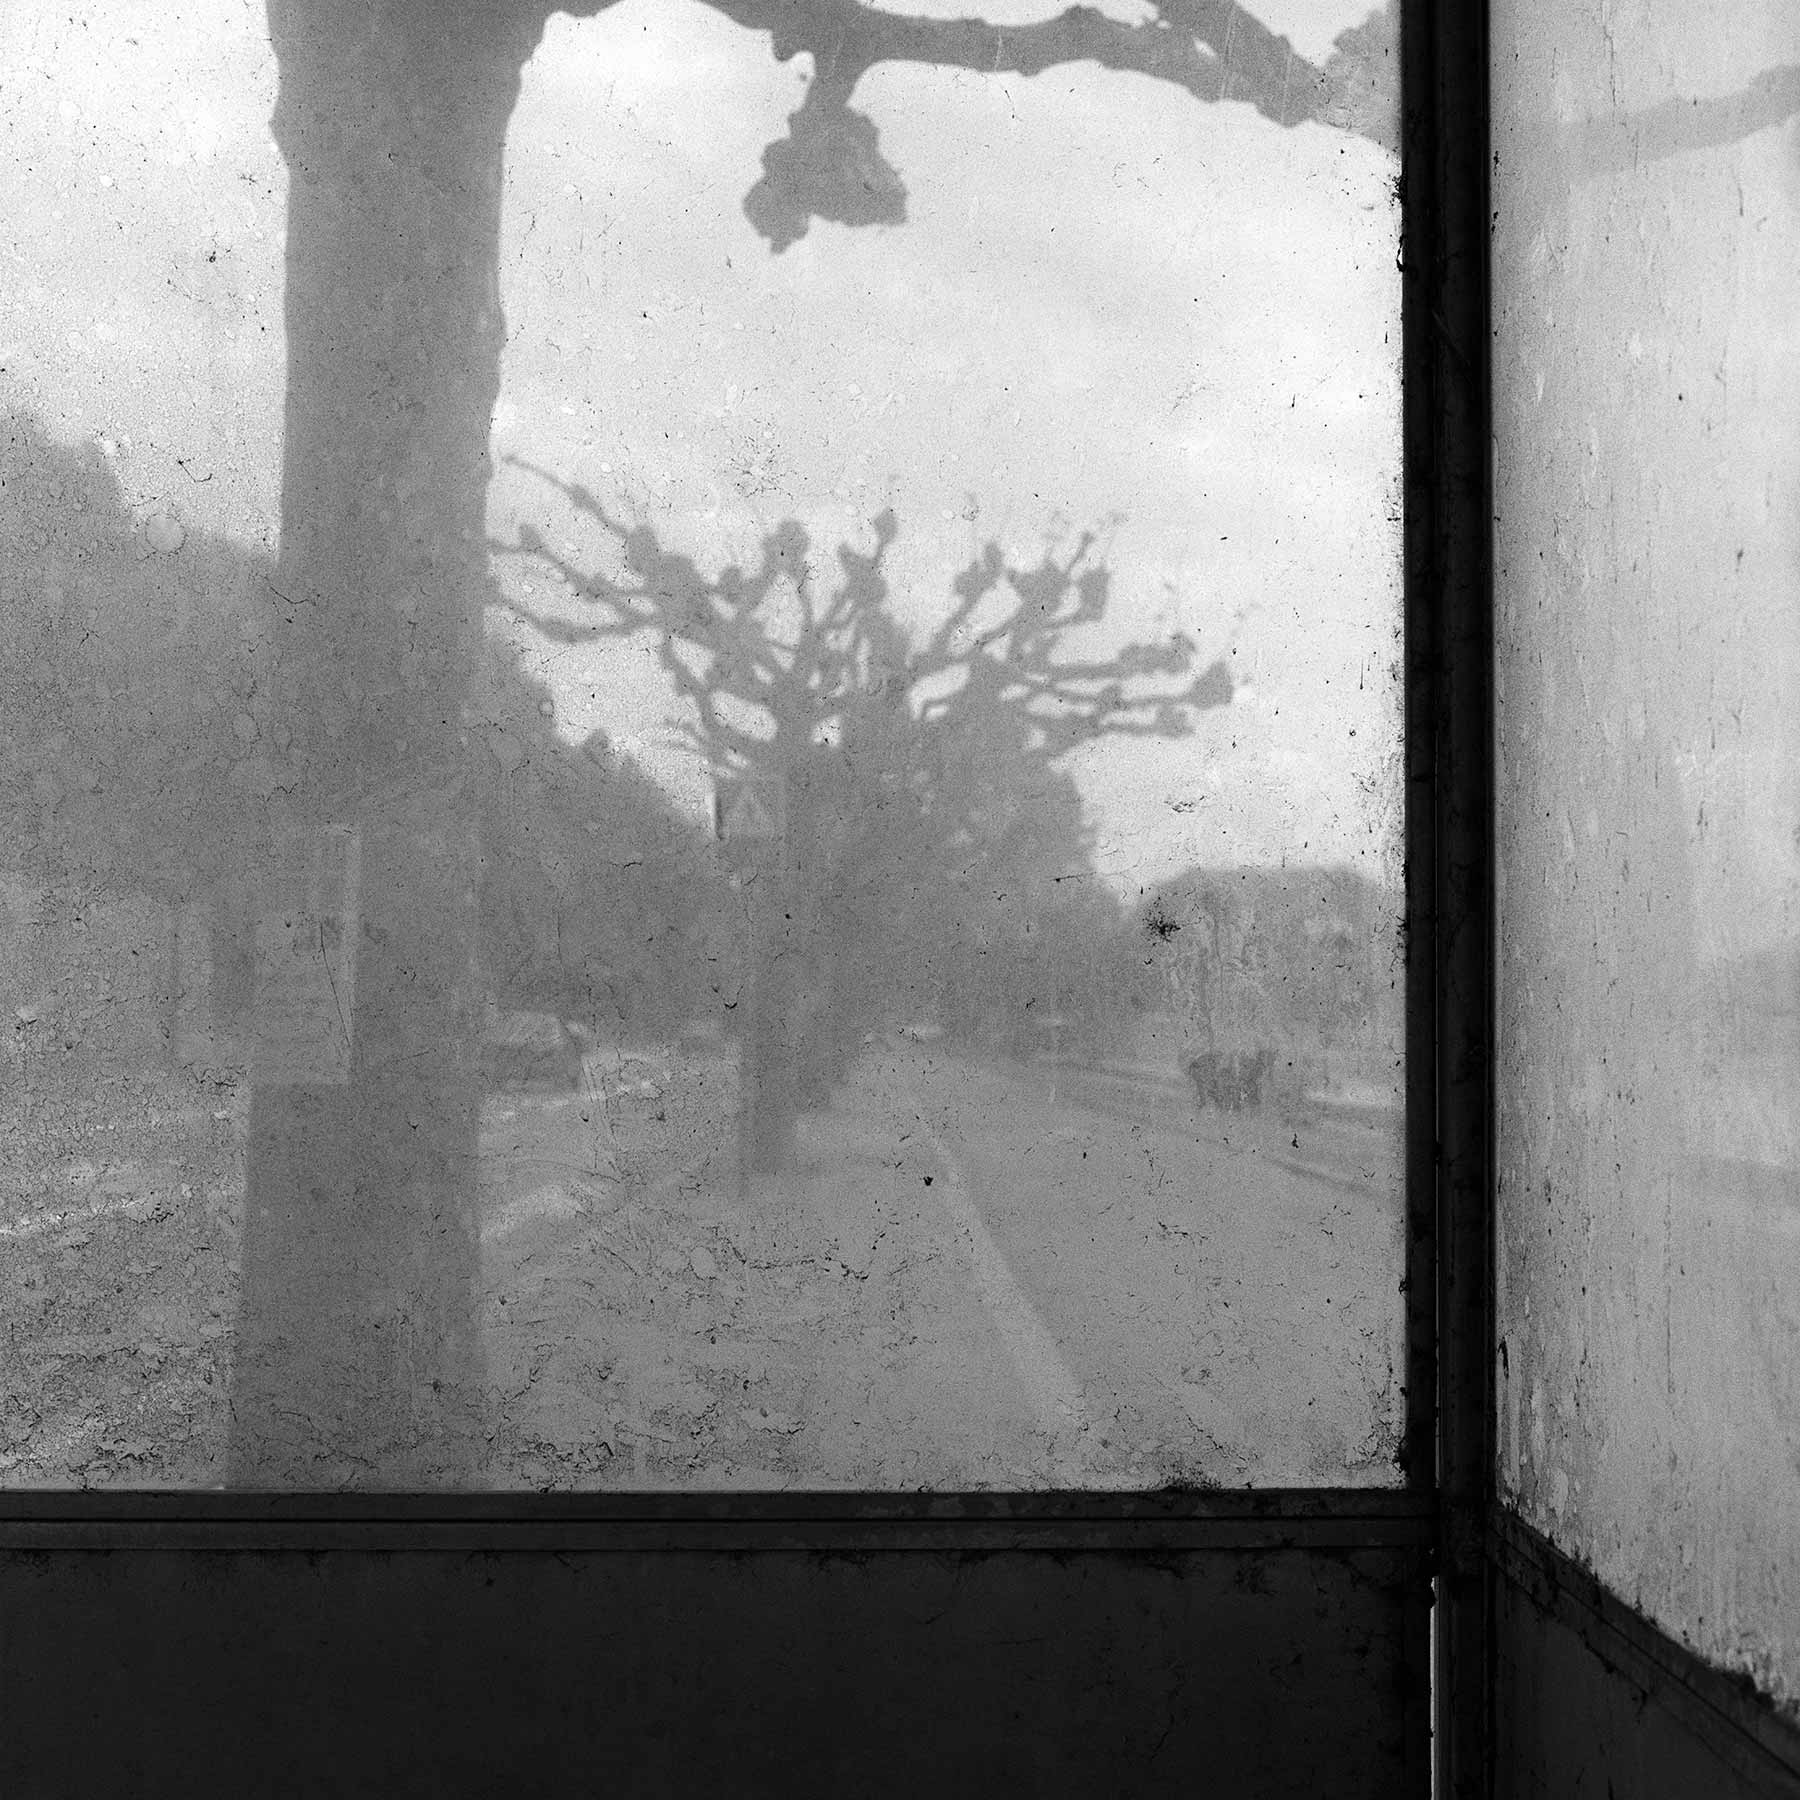 Fenêtre sale d'un arrêt de bus – Quai de Cologny, Genève, Suisse, 1981